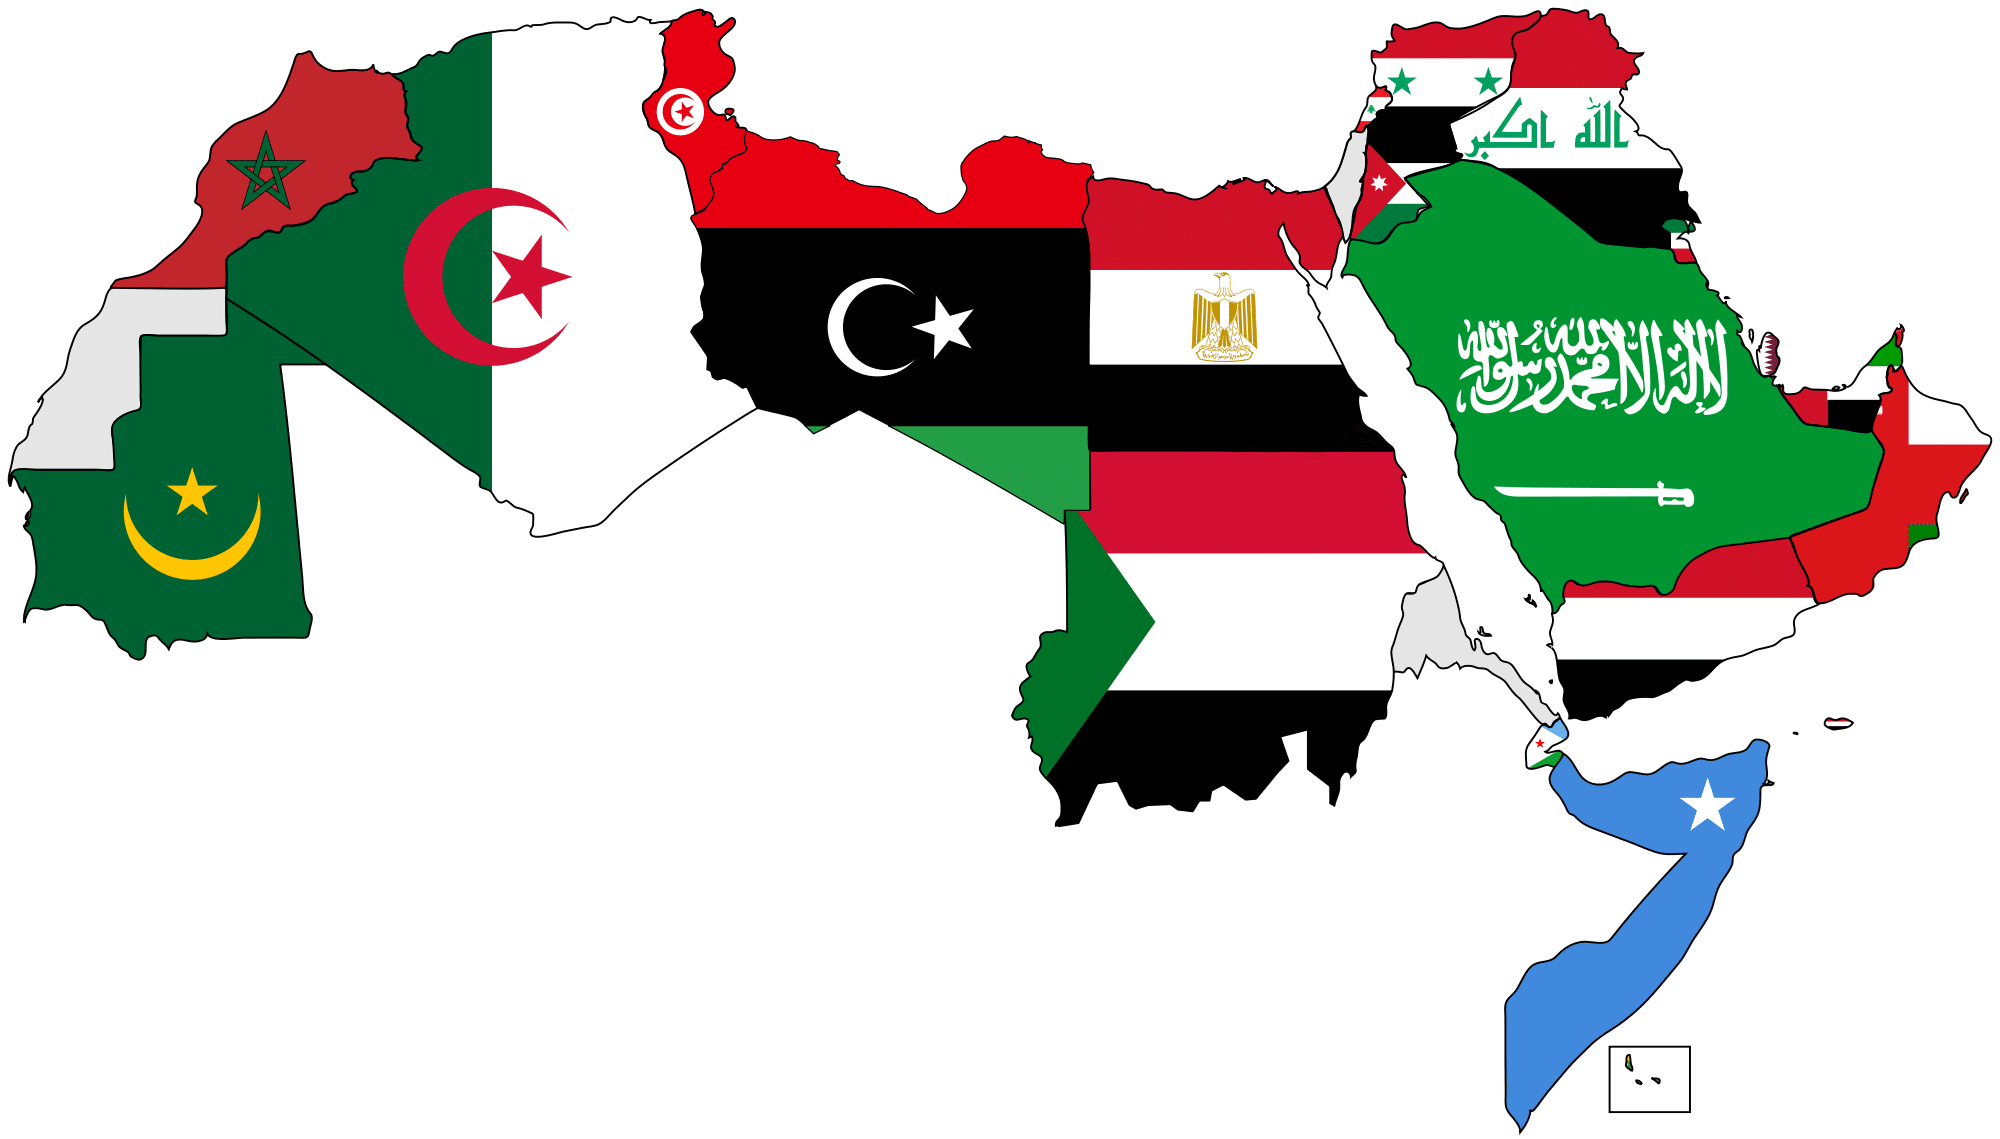 خارطة الدول العربية -صورة خريطة الدول العربية الدول- العربية- خارطة- خريطة- صورة 14910 1